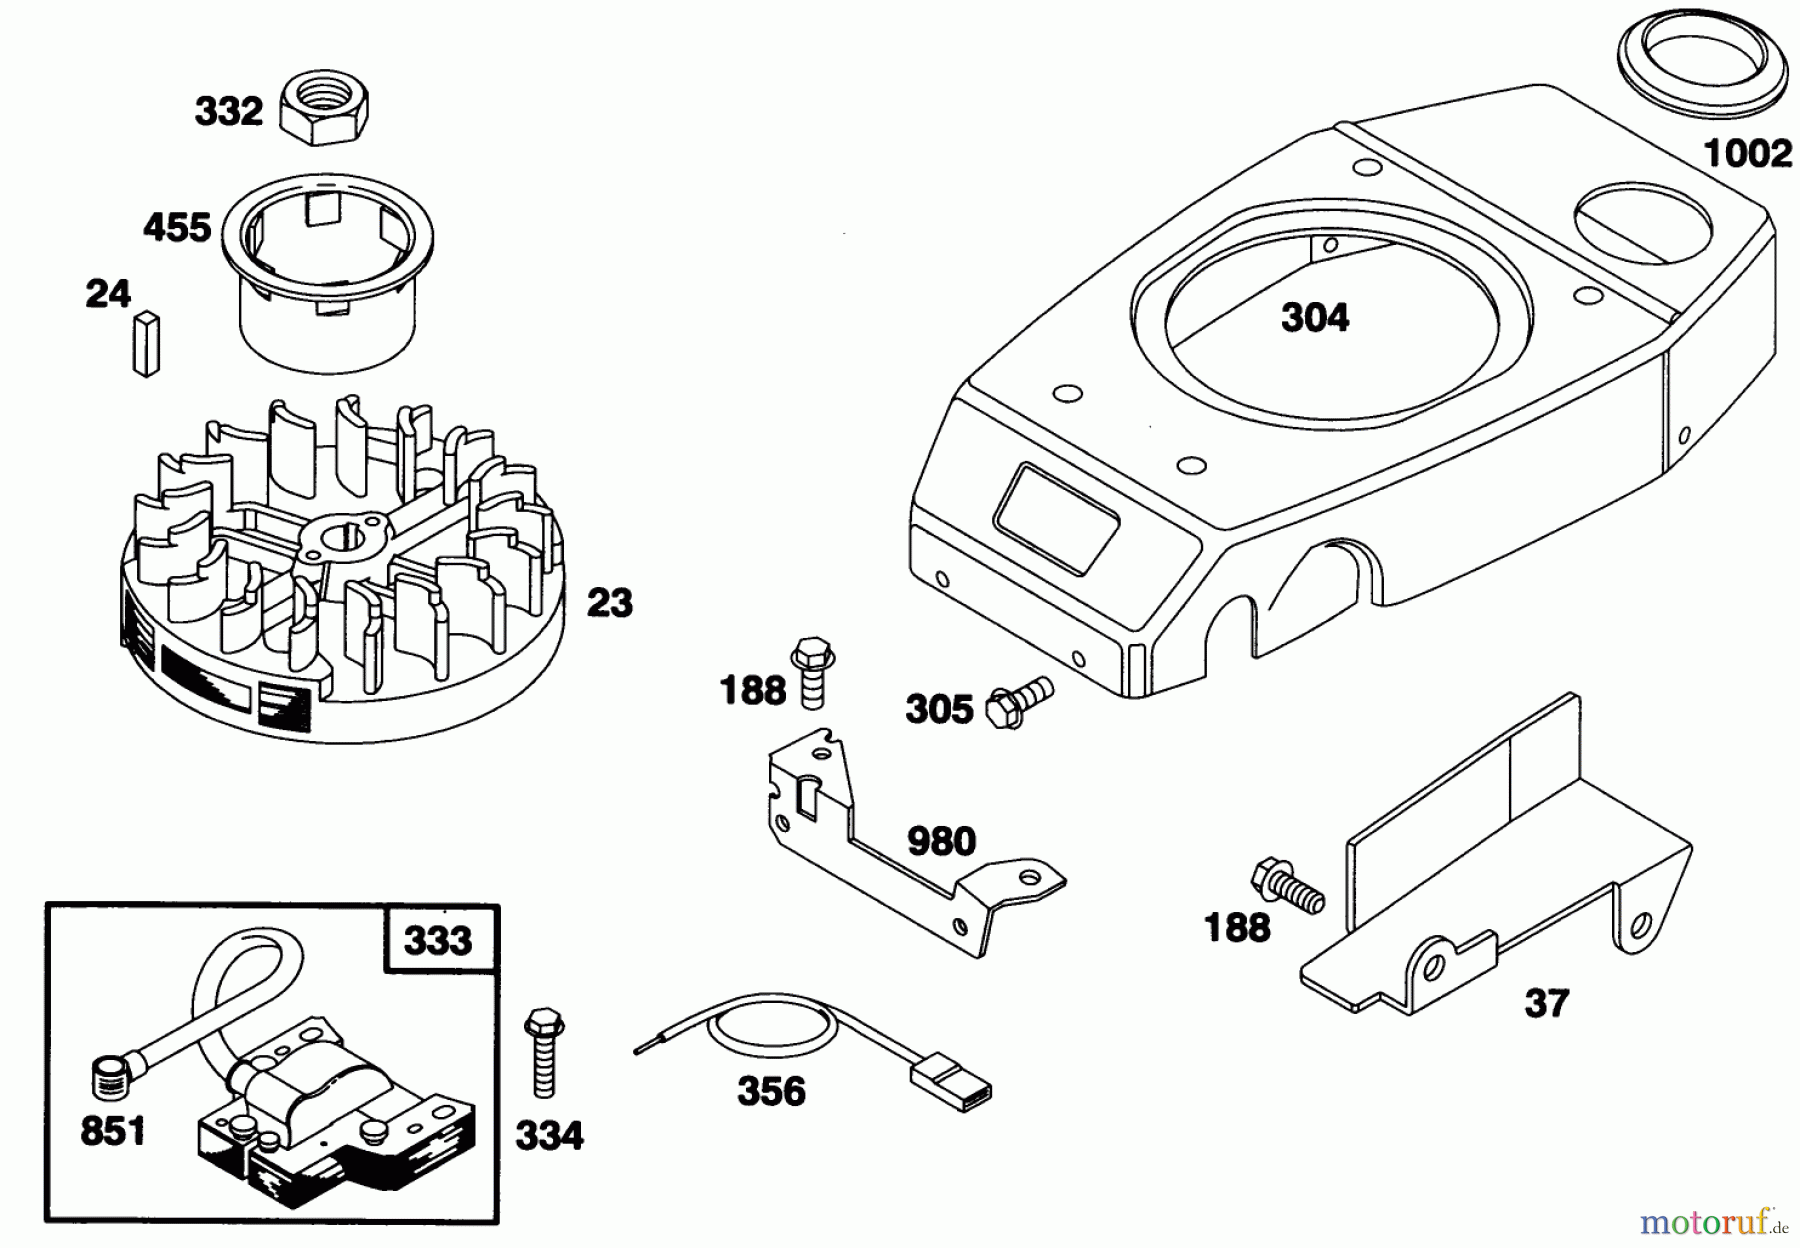  Toro Neu Mowers, Walk-Behind Seite 1 20761B - Toro Lawnmower, 1993 (39000001-39999999) ENGINE GTS 150 #6